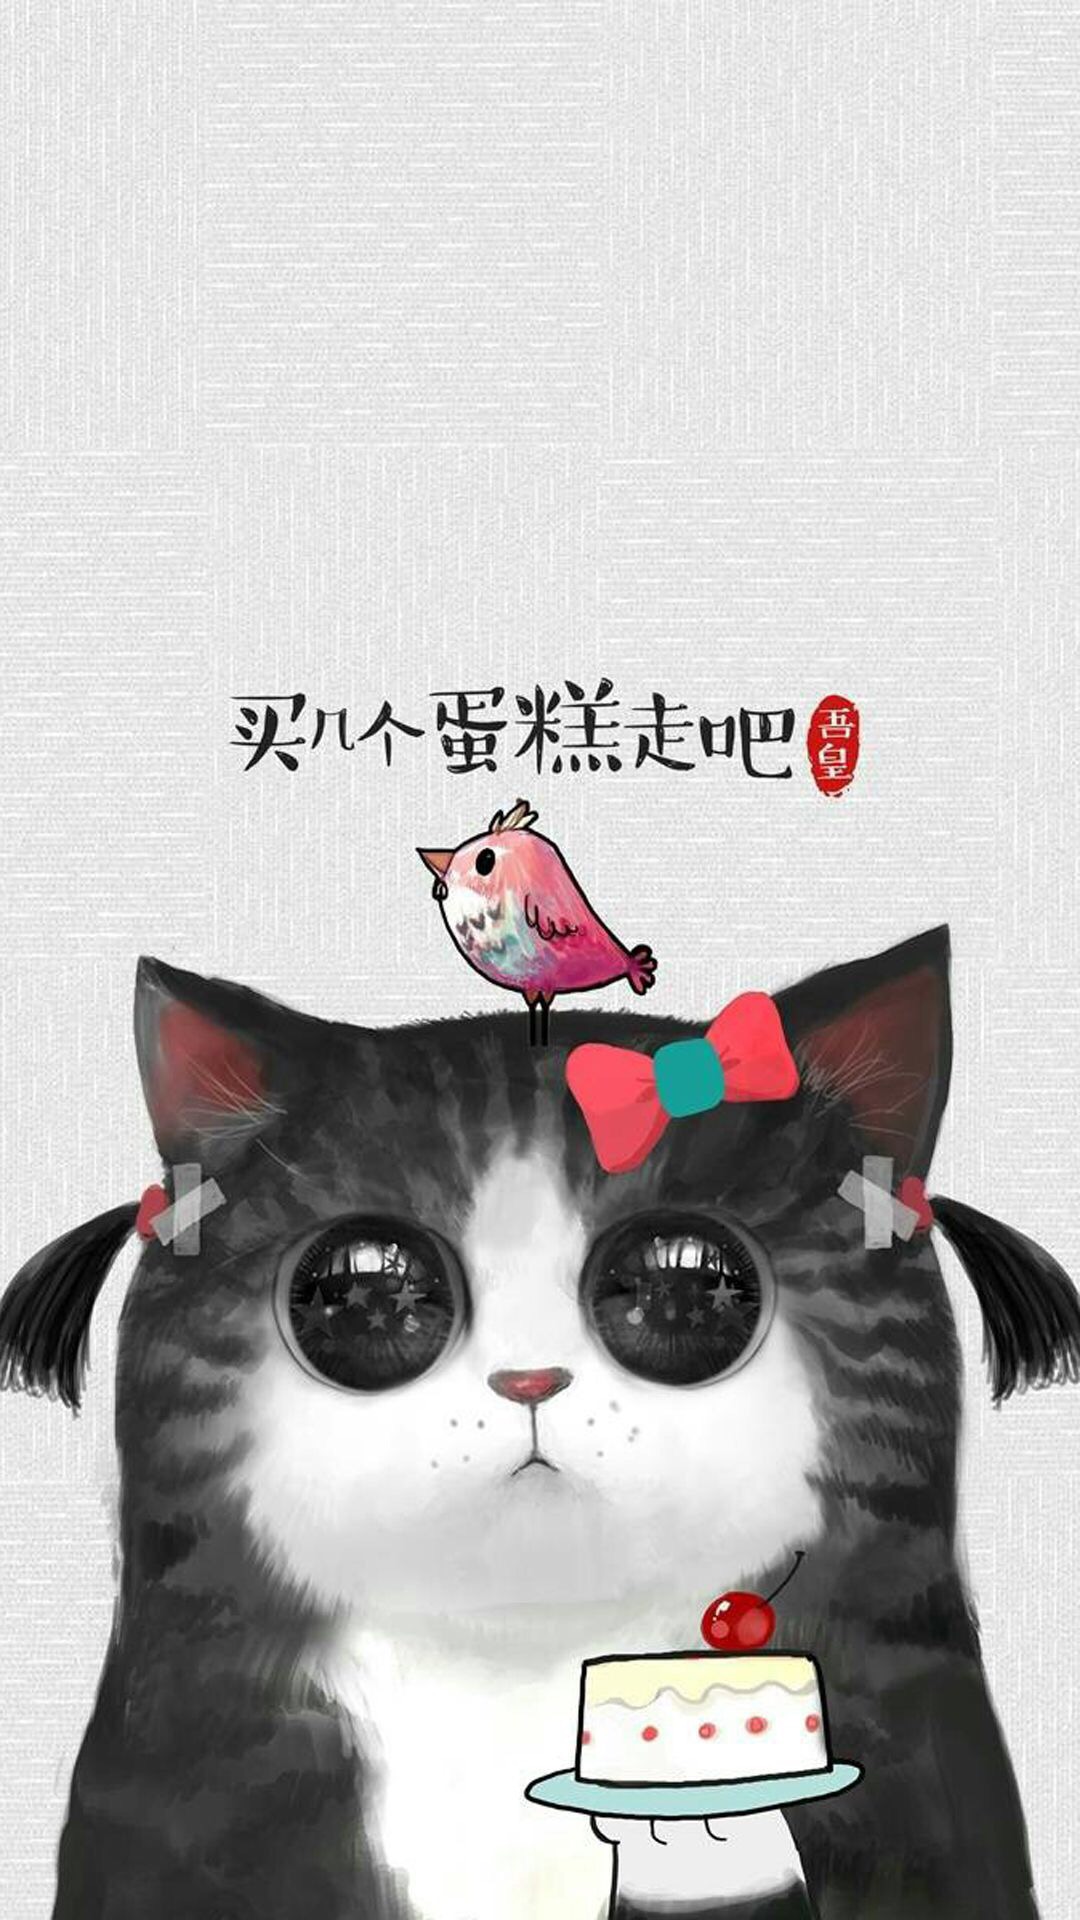 可爱卡通猫咪网络流行语图片手机壁纸